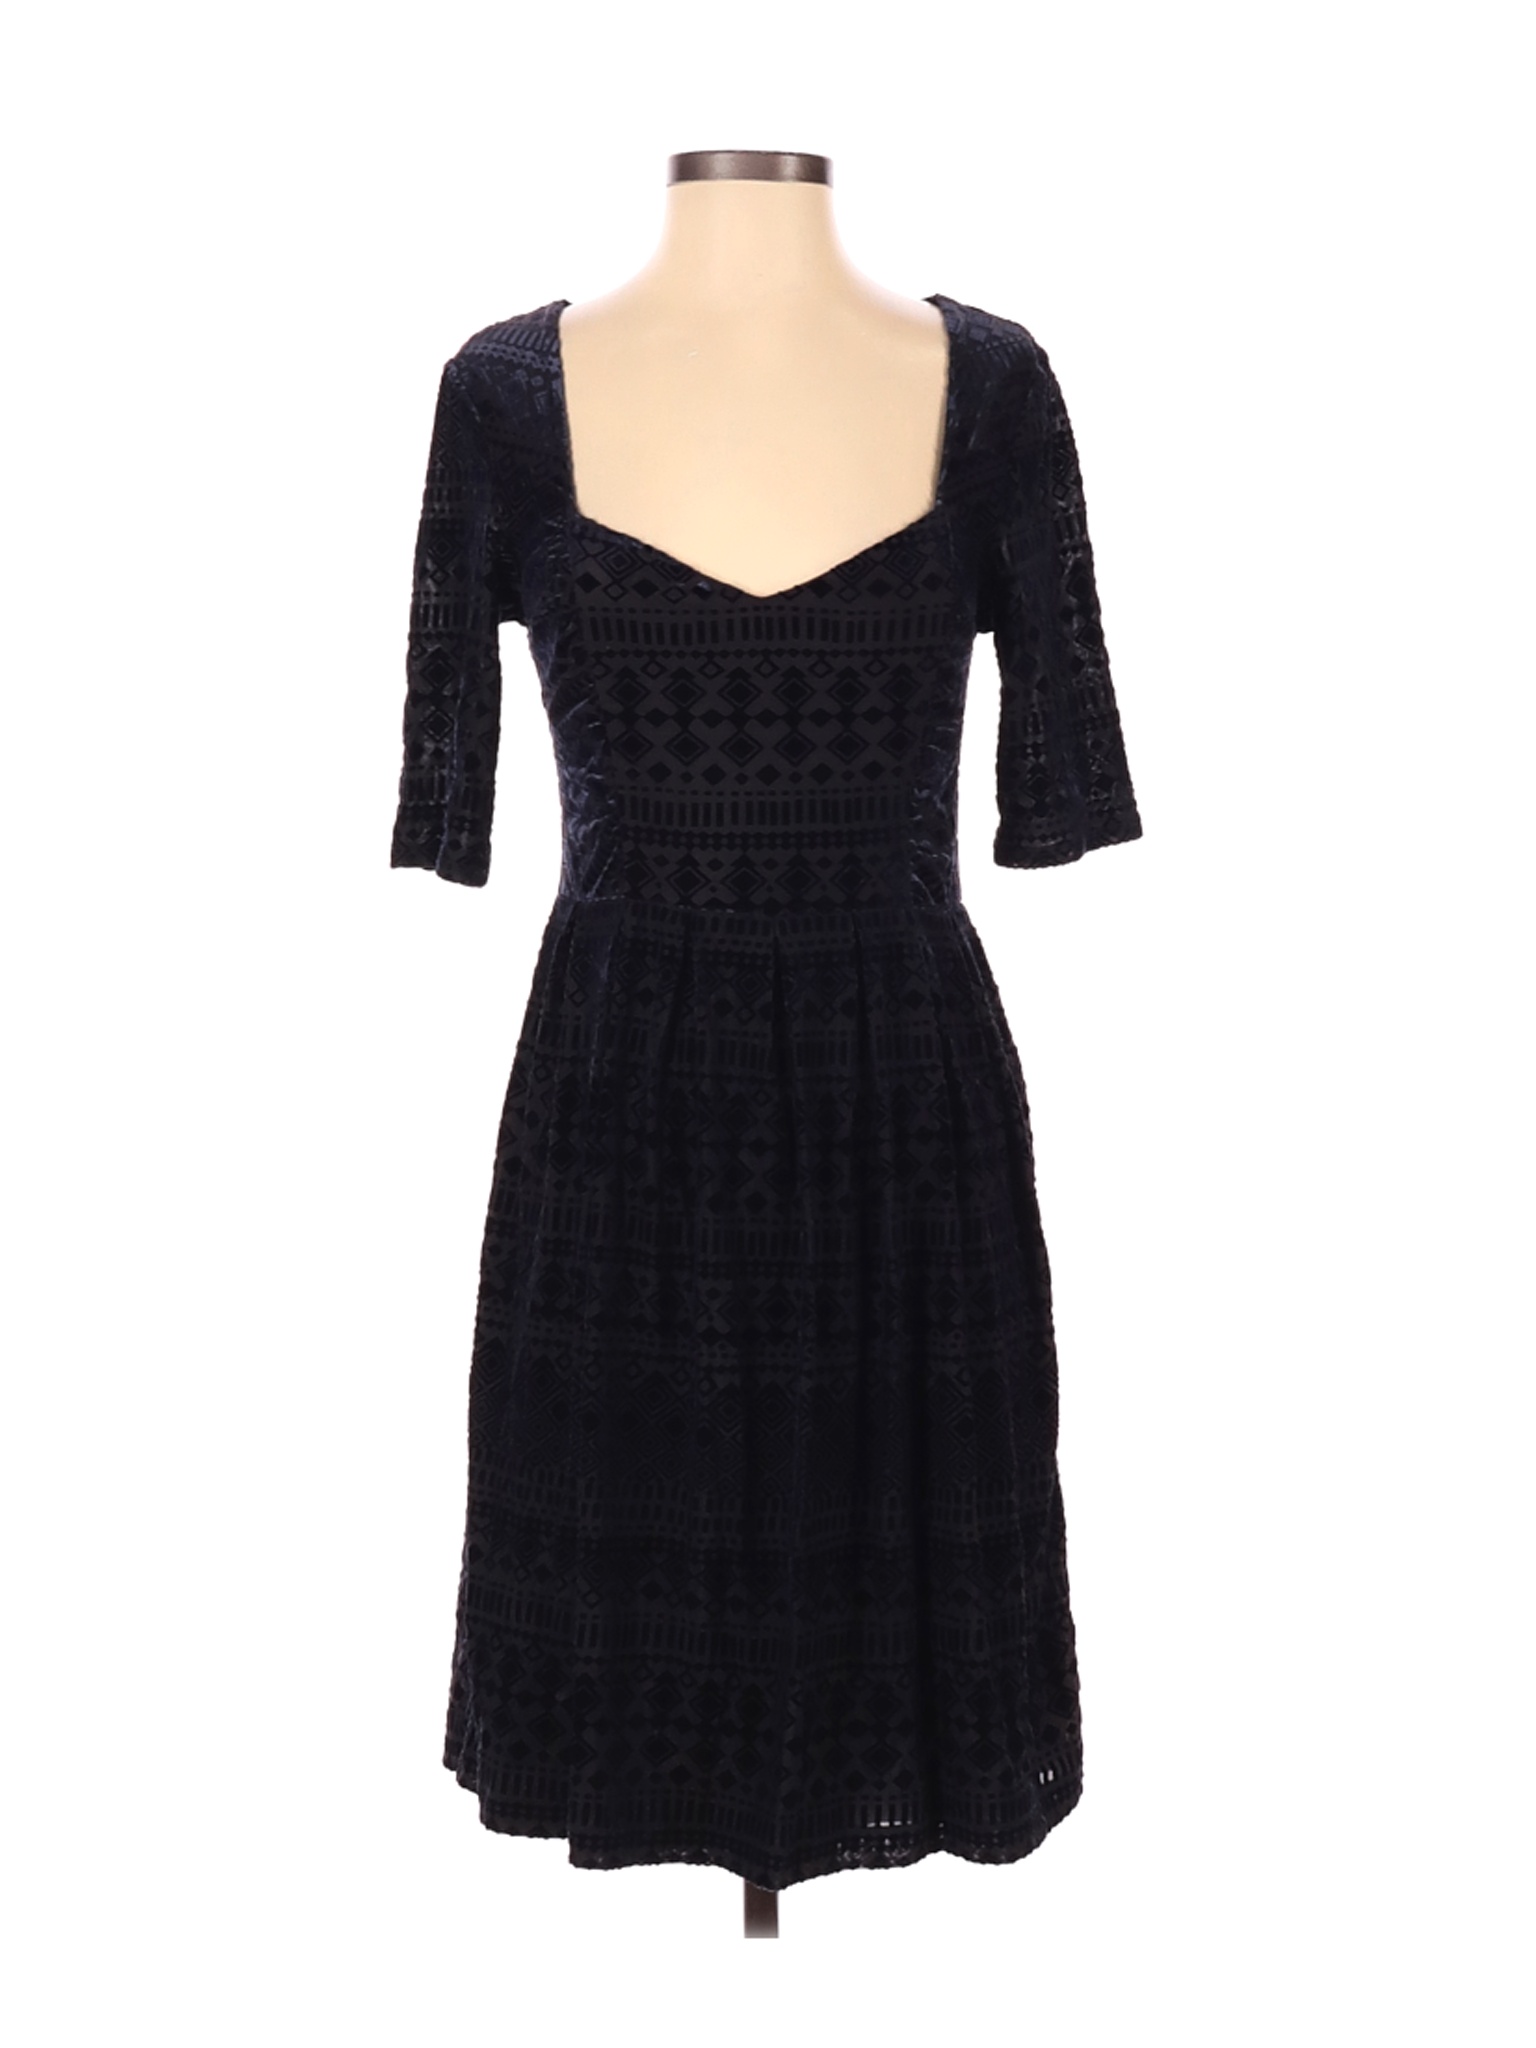 Meadow Rue Women Black Casual Dress S | eBay